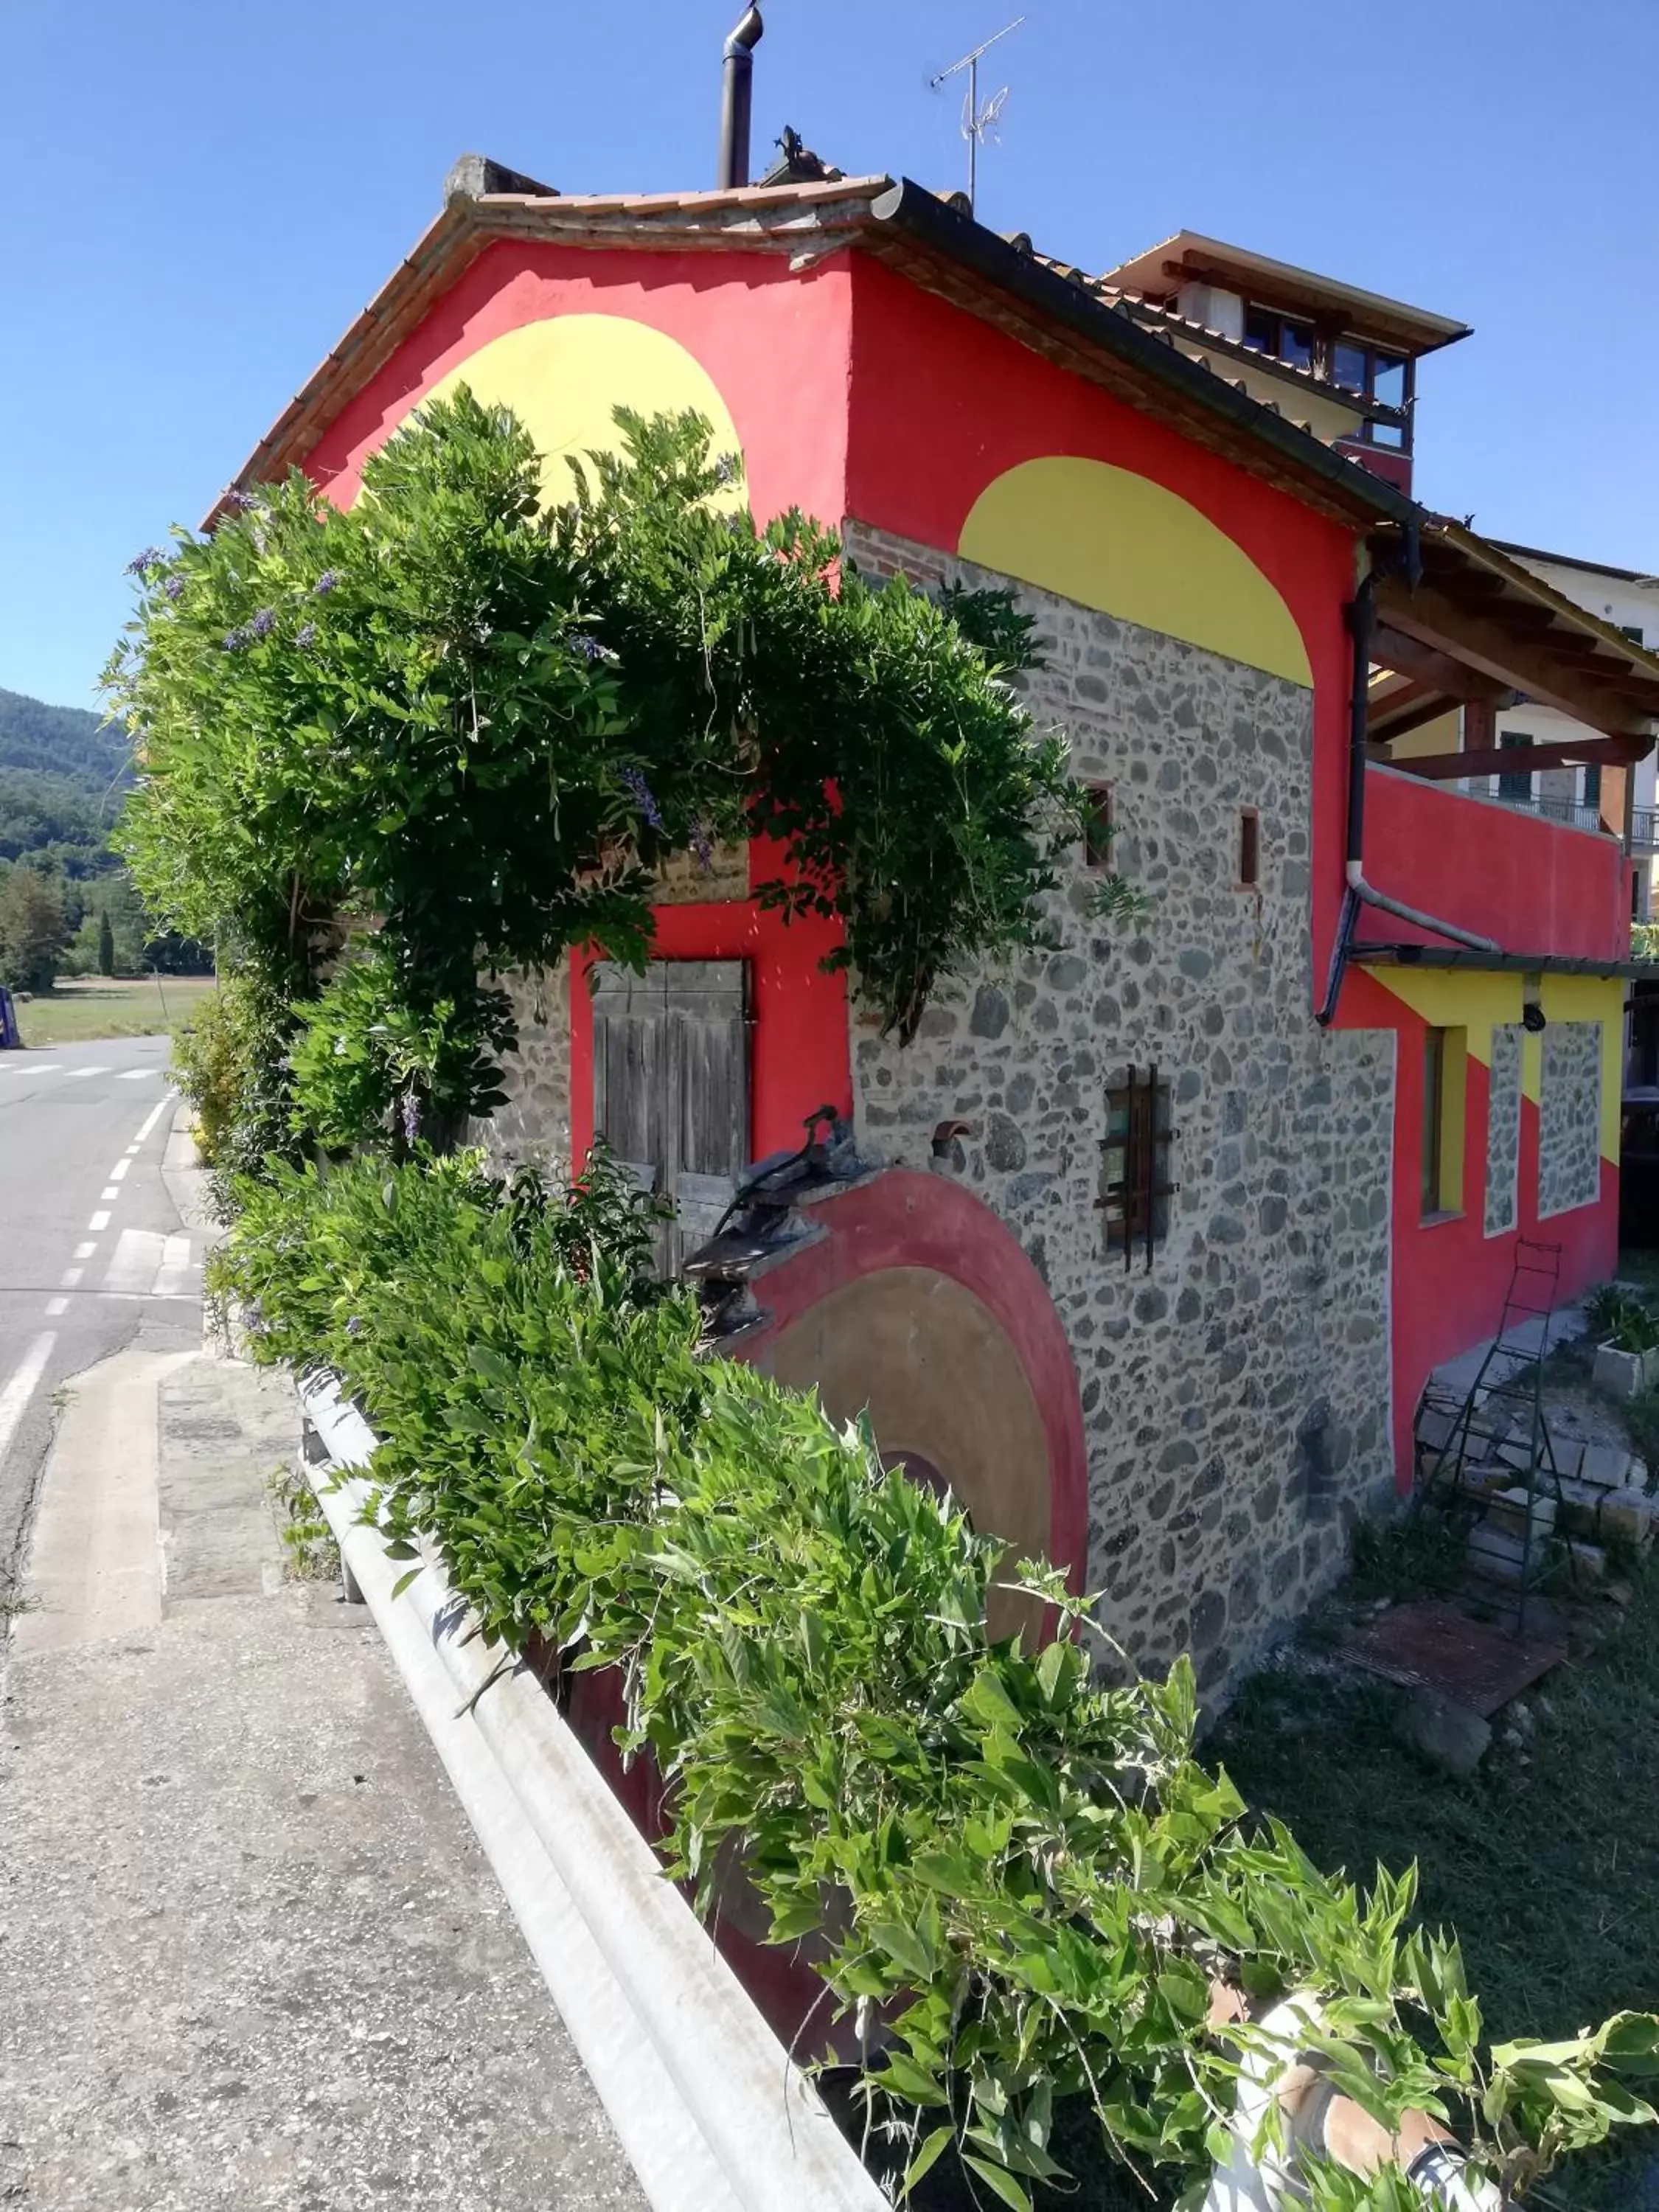 Property Building in B&B e Locazioni Turistiche Antico Borgo Toscano